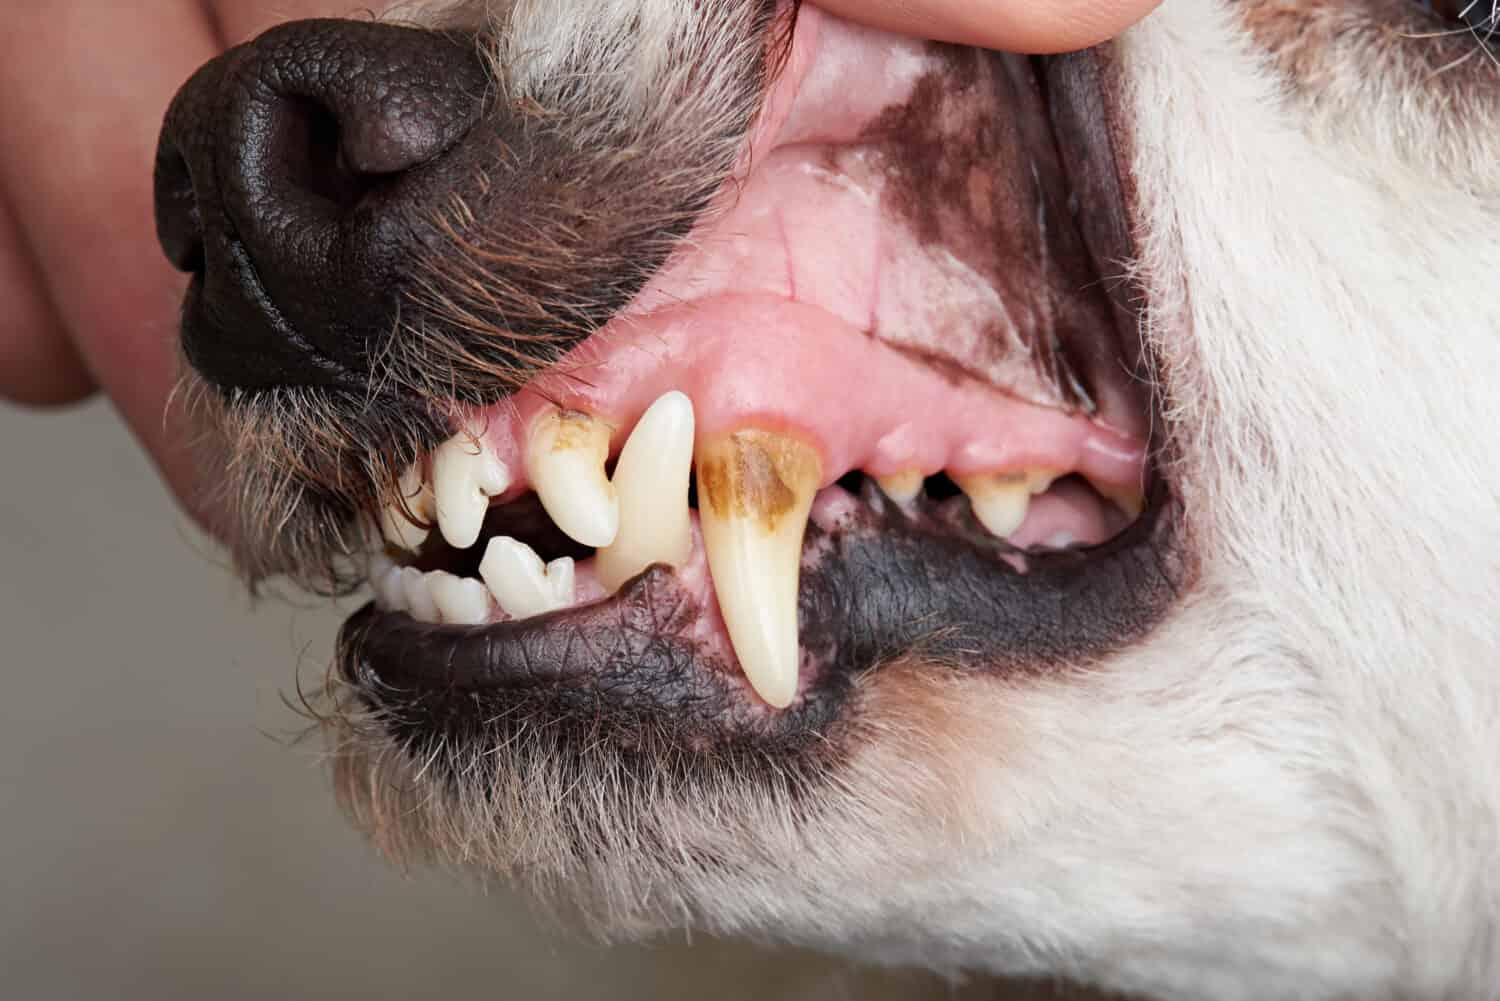 Cura dei denti del cane da vicino.  Macro della bocca aperta del cane